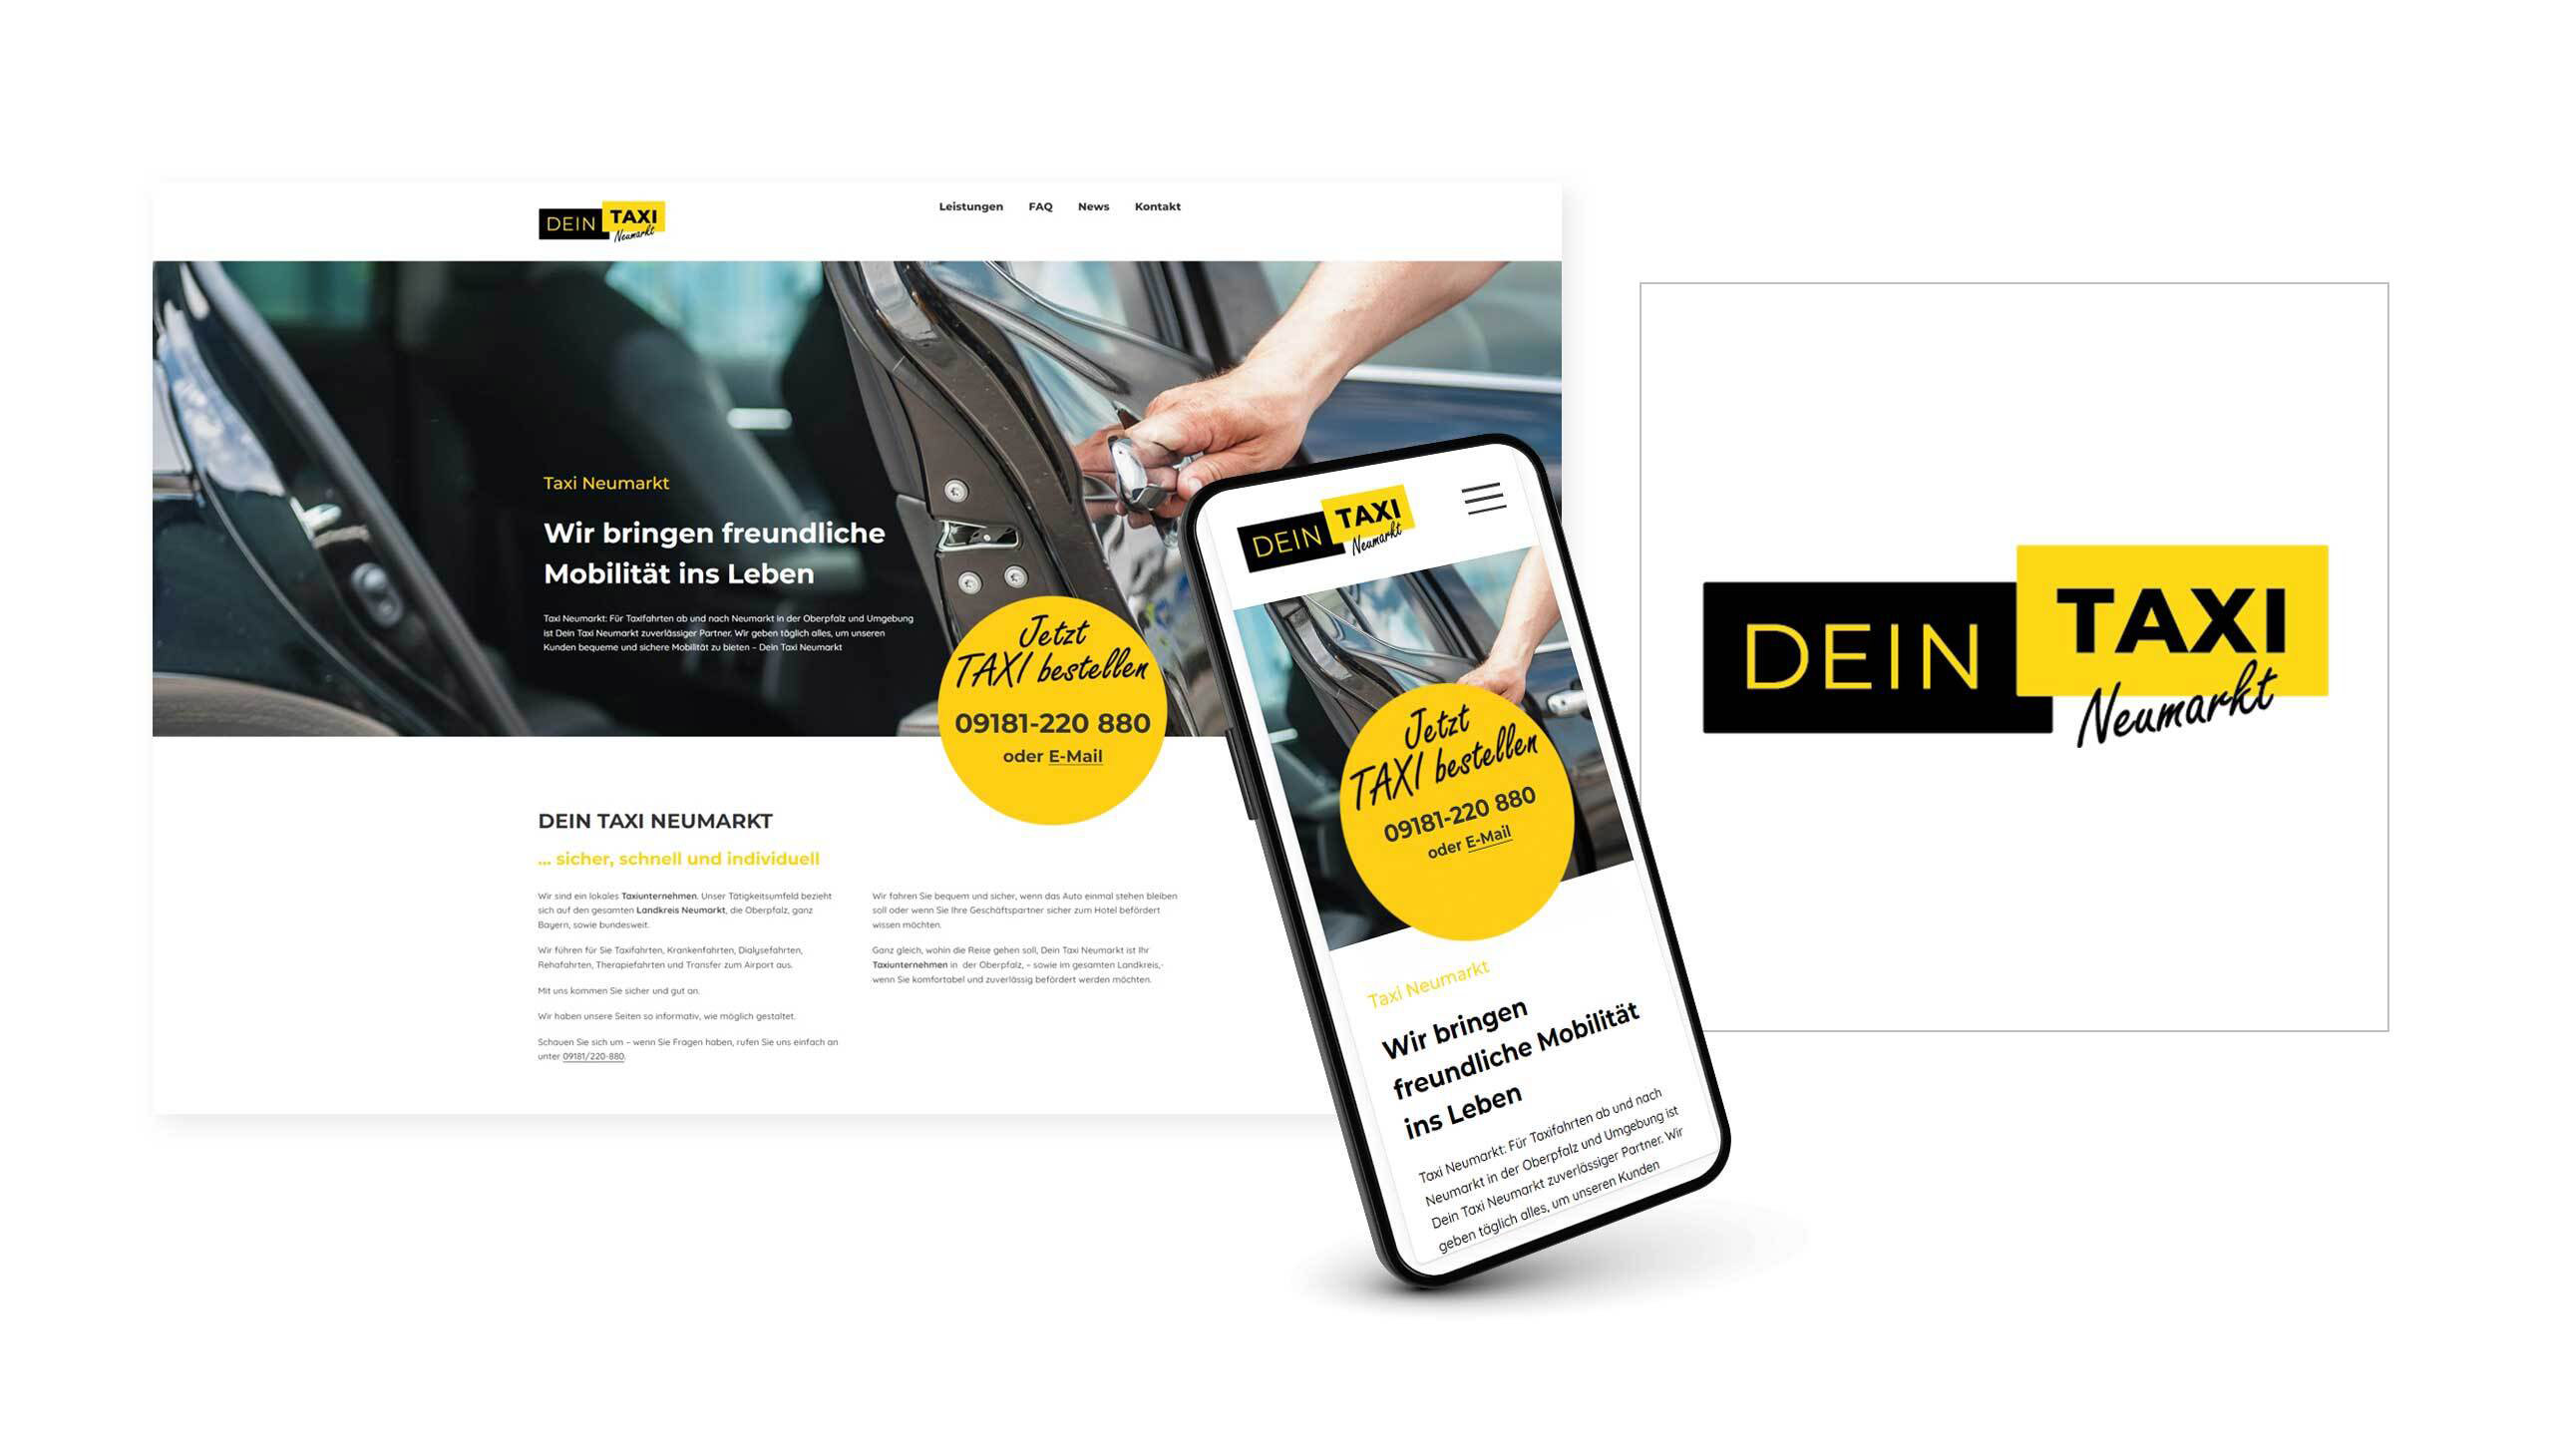 Marketing Agentur Augsburg - Referenzprojekt DEIN TAXI NEUMARKT